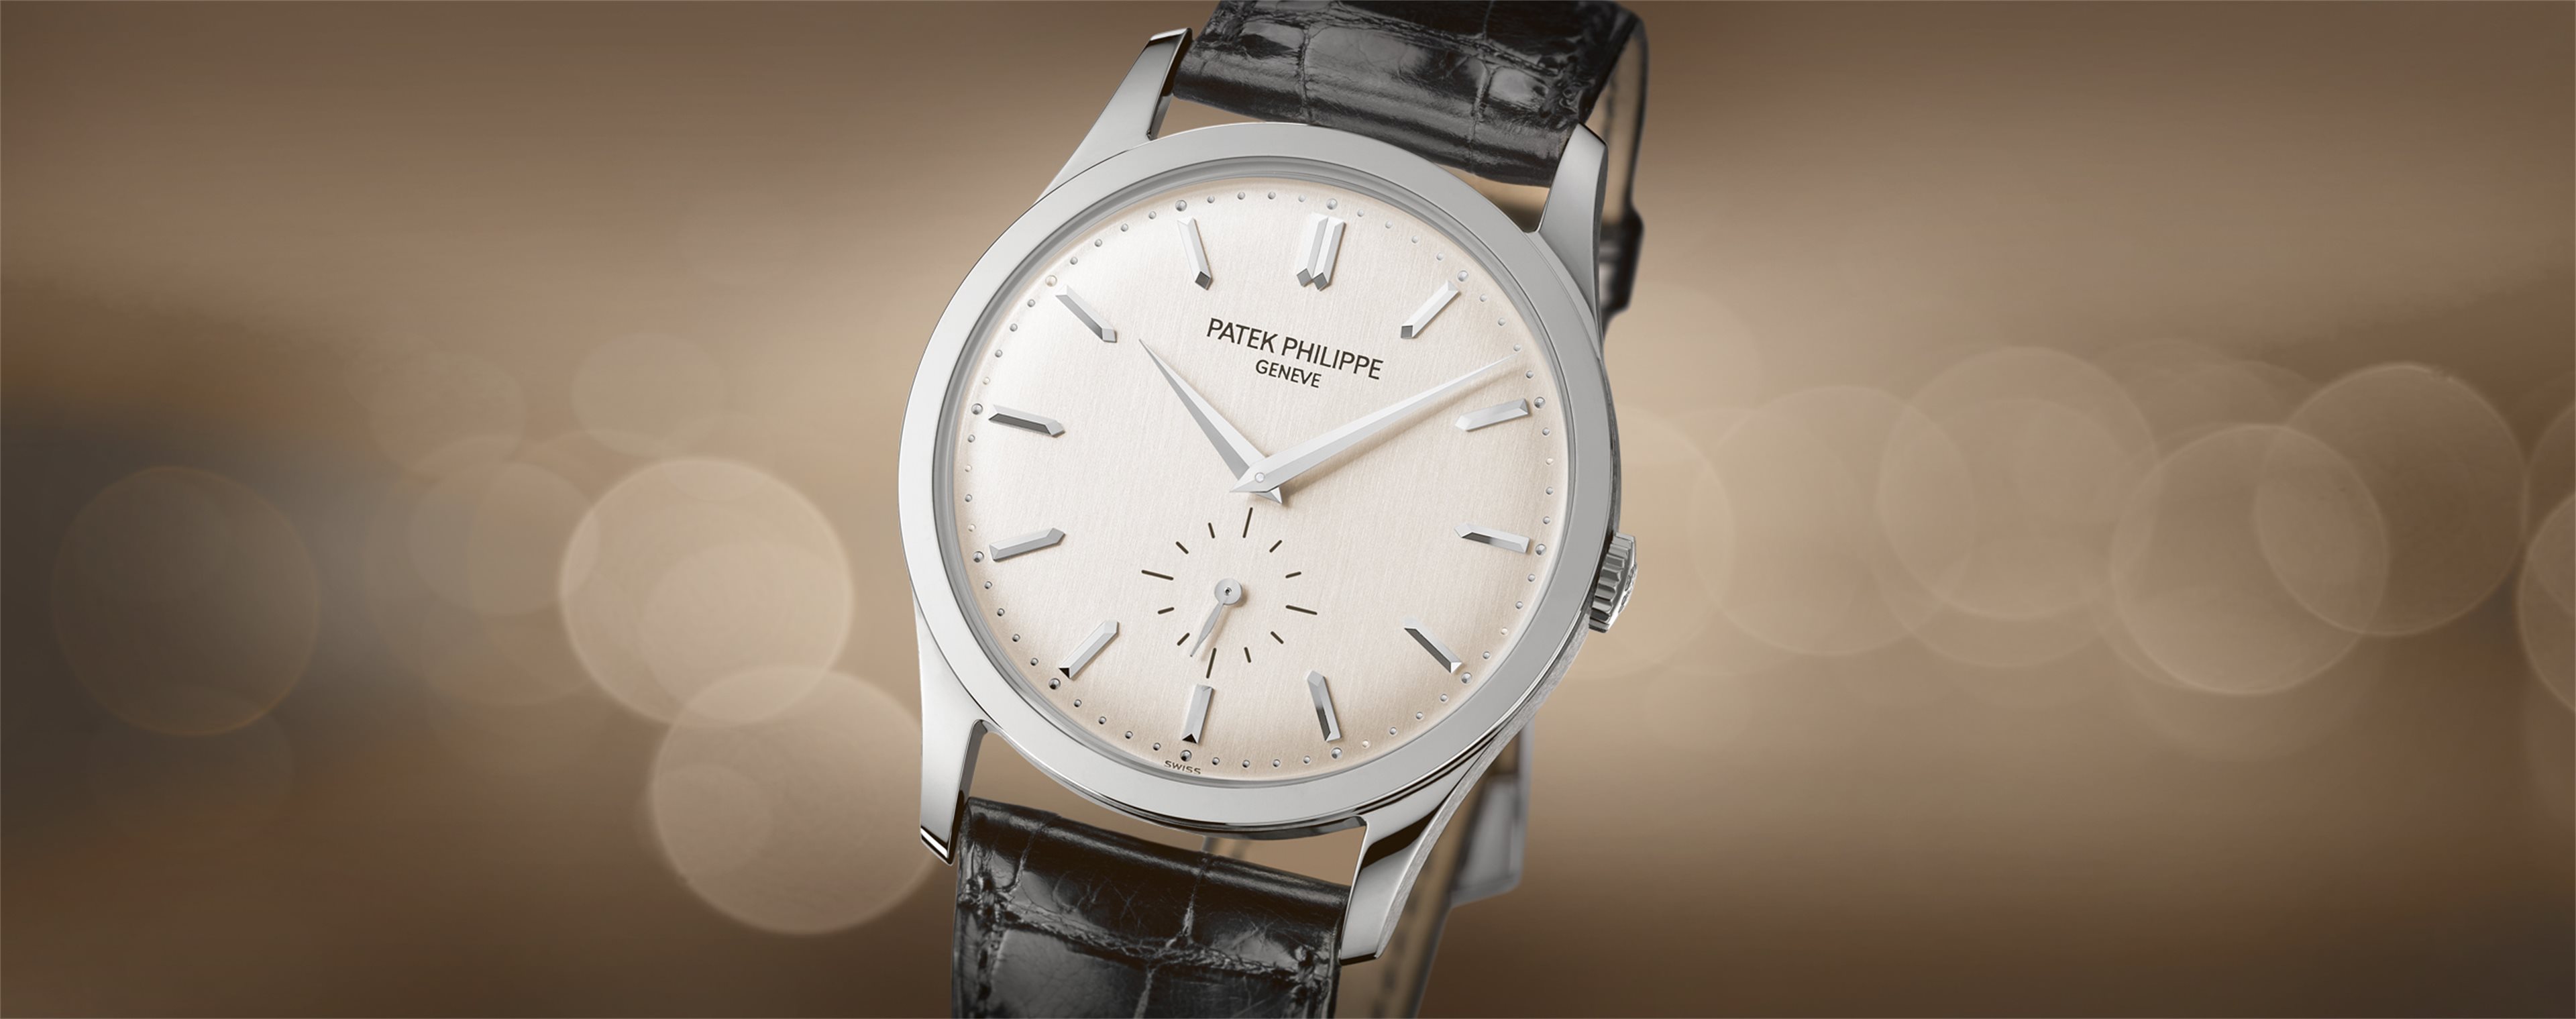 Porsche Design Watch Replica Swiss Movement China $